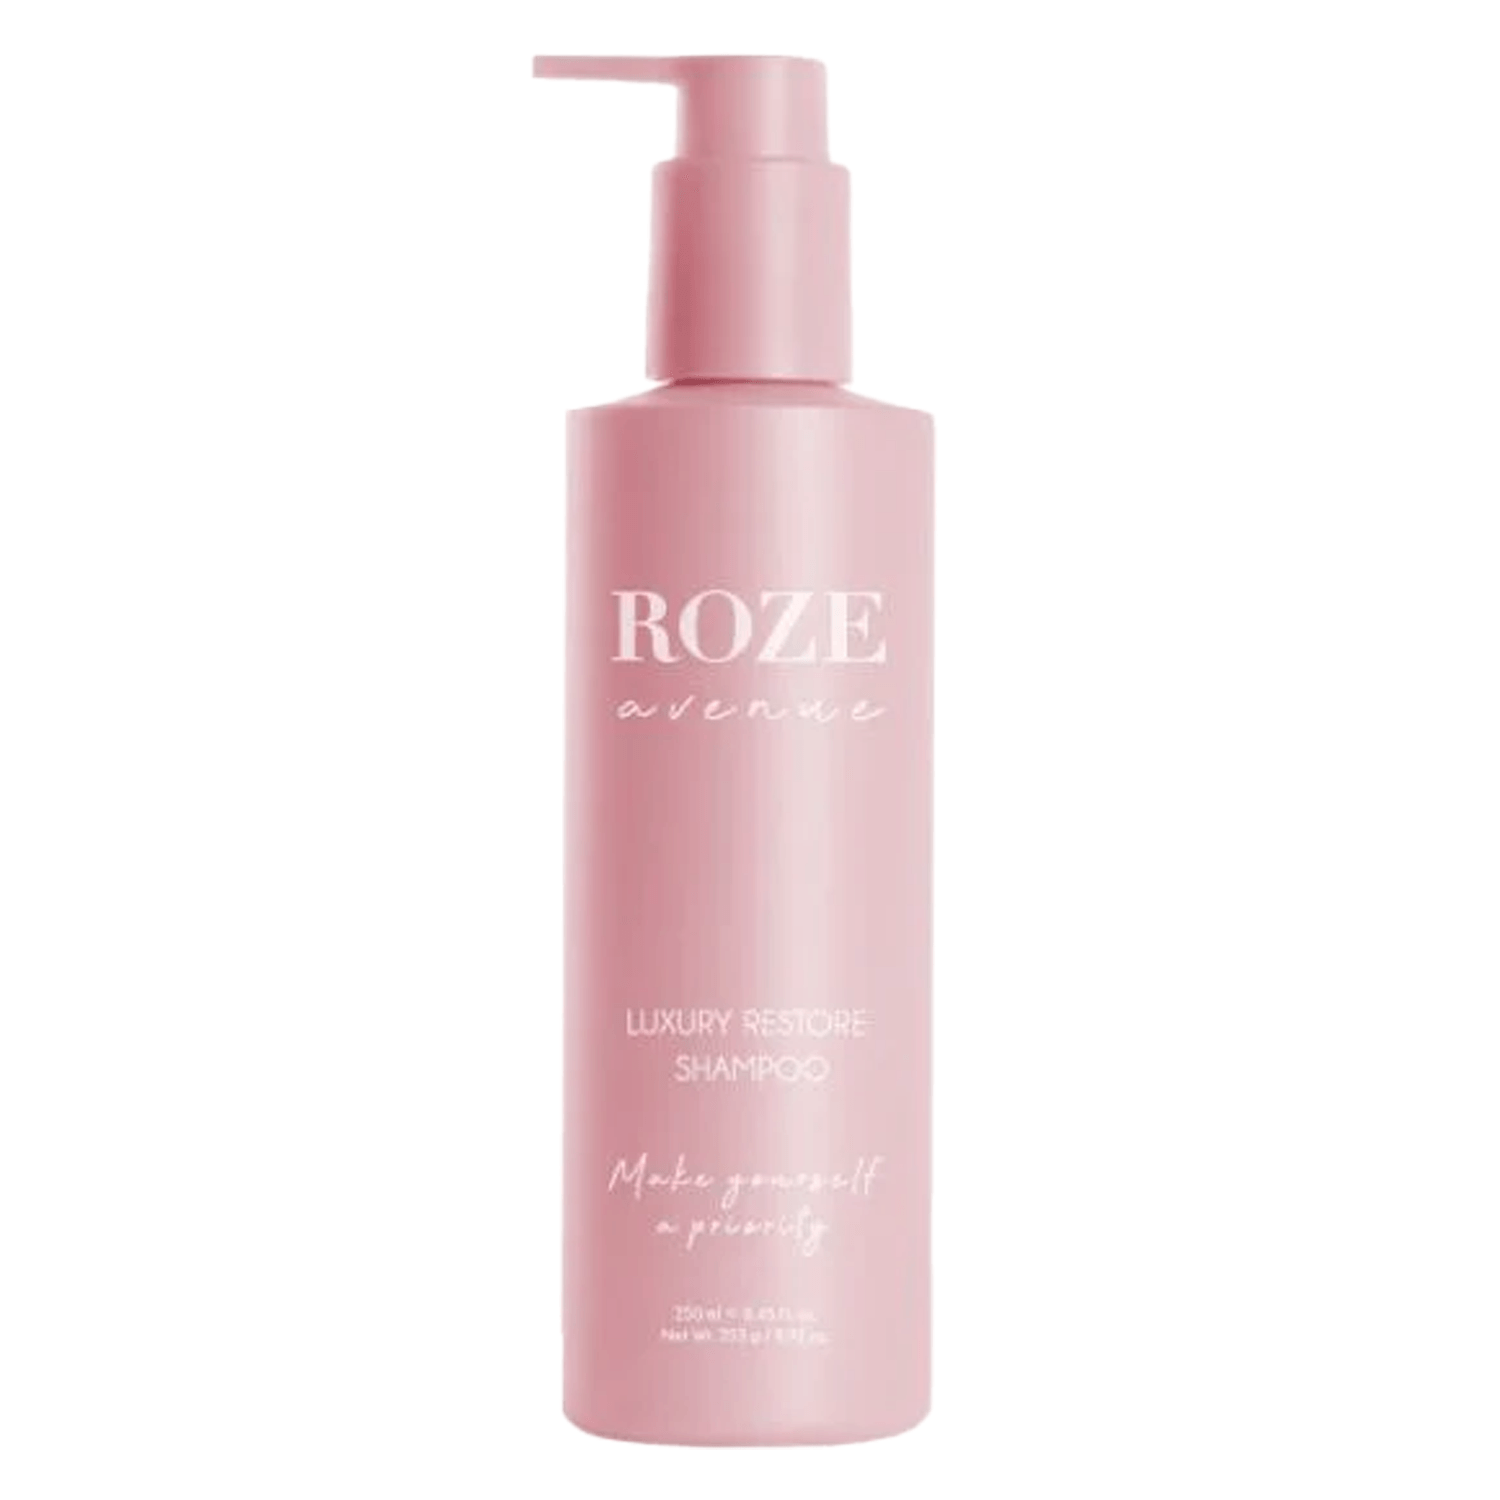 Produktbild von ROZE avenue - Luxury Restore Shampoo